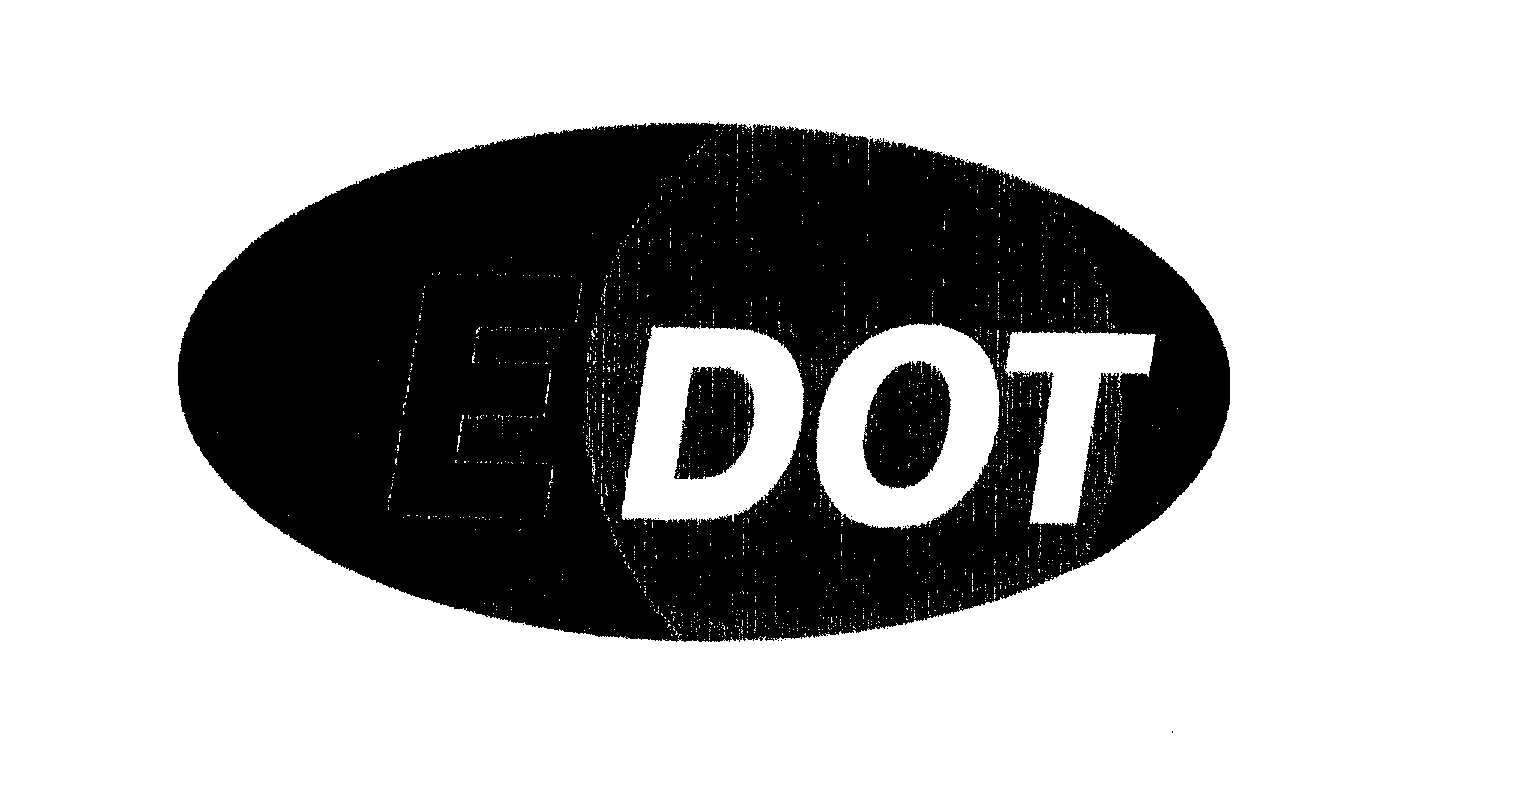 Trademark Logo E DOT